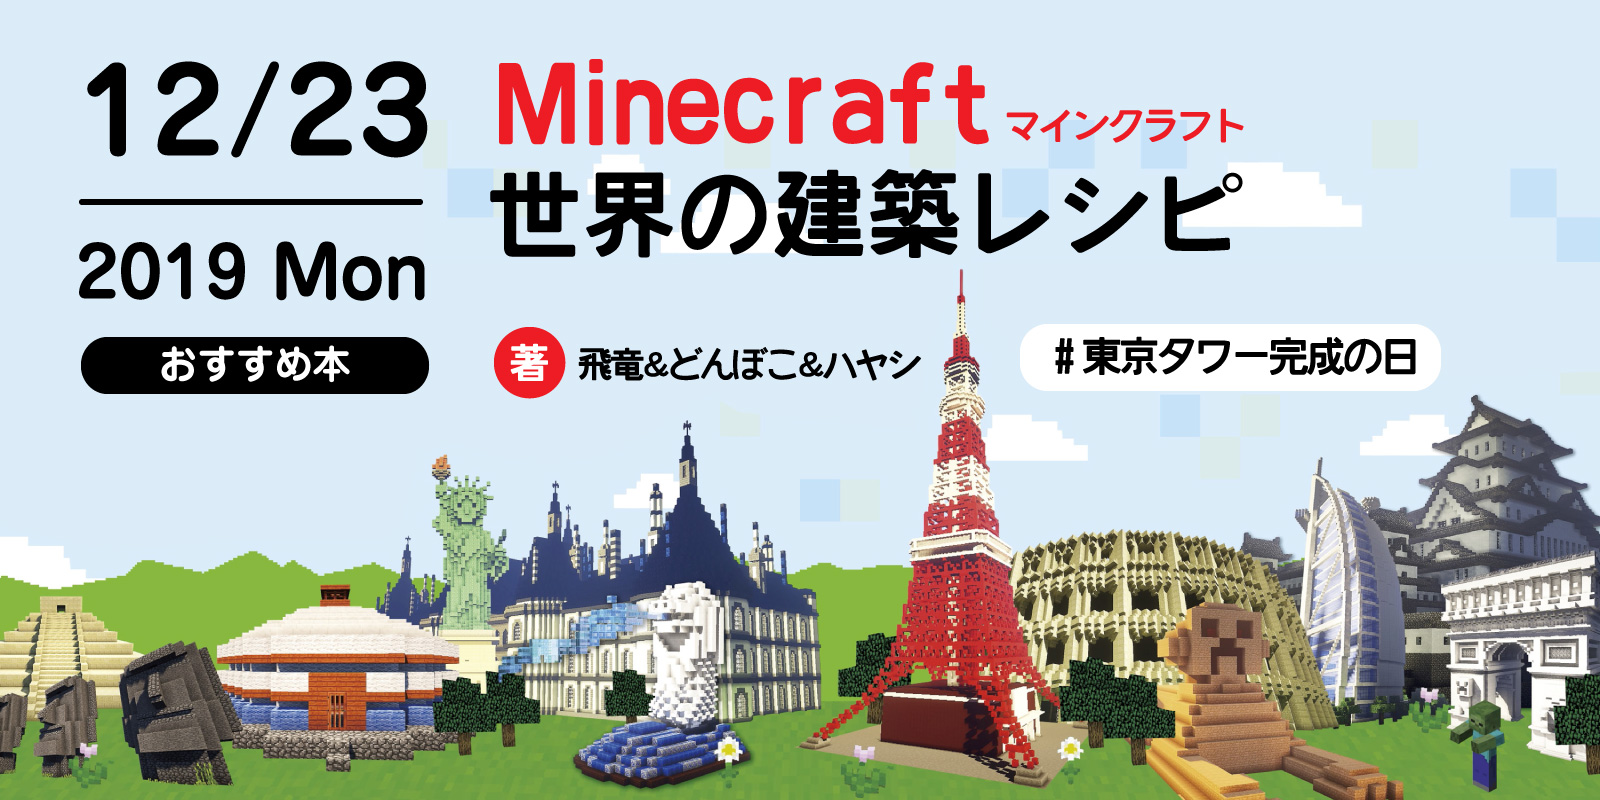 株式会社 玄光社 今日のおすすめ本 12月23日は 東京タワー完成の日 そんな今日のおすすめ本は Minecraft マインクラフト 世界の建築レシピ 東京タワーの作り方も掲載していますので 完成記念を想いながら作るのもおすすめですよ